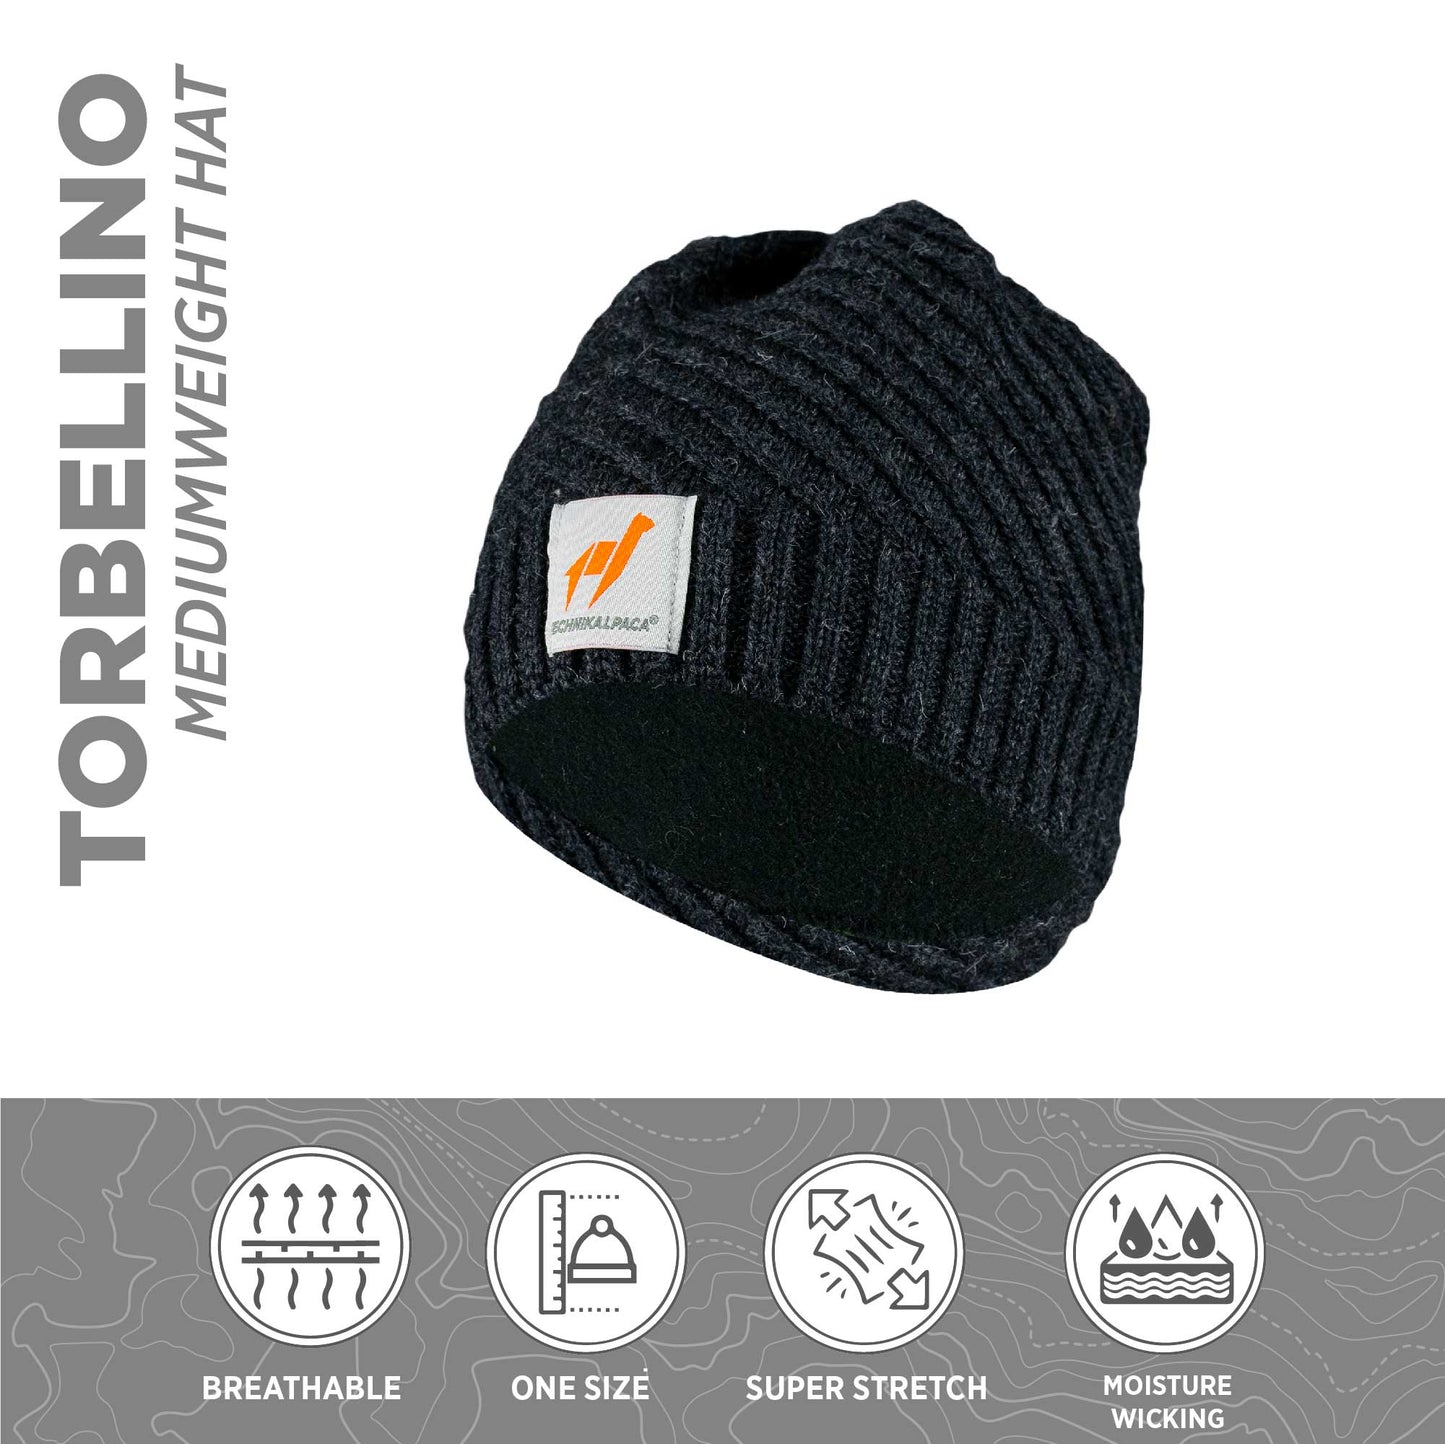 Premium-Mütze aus Alpaka-Merino und Bambus. Unisex | Torbellino